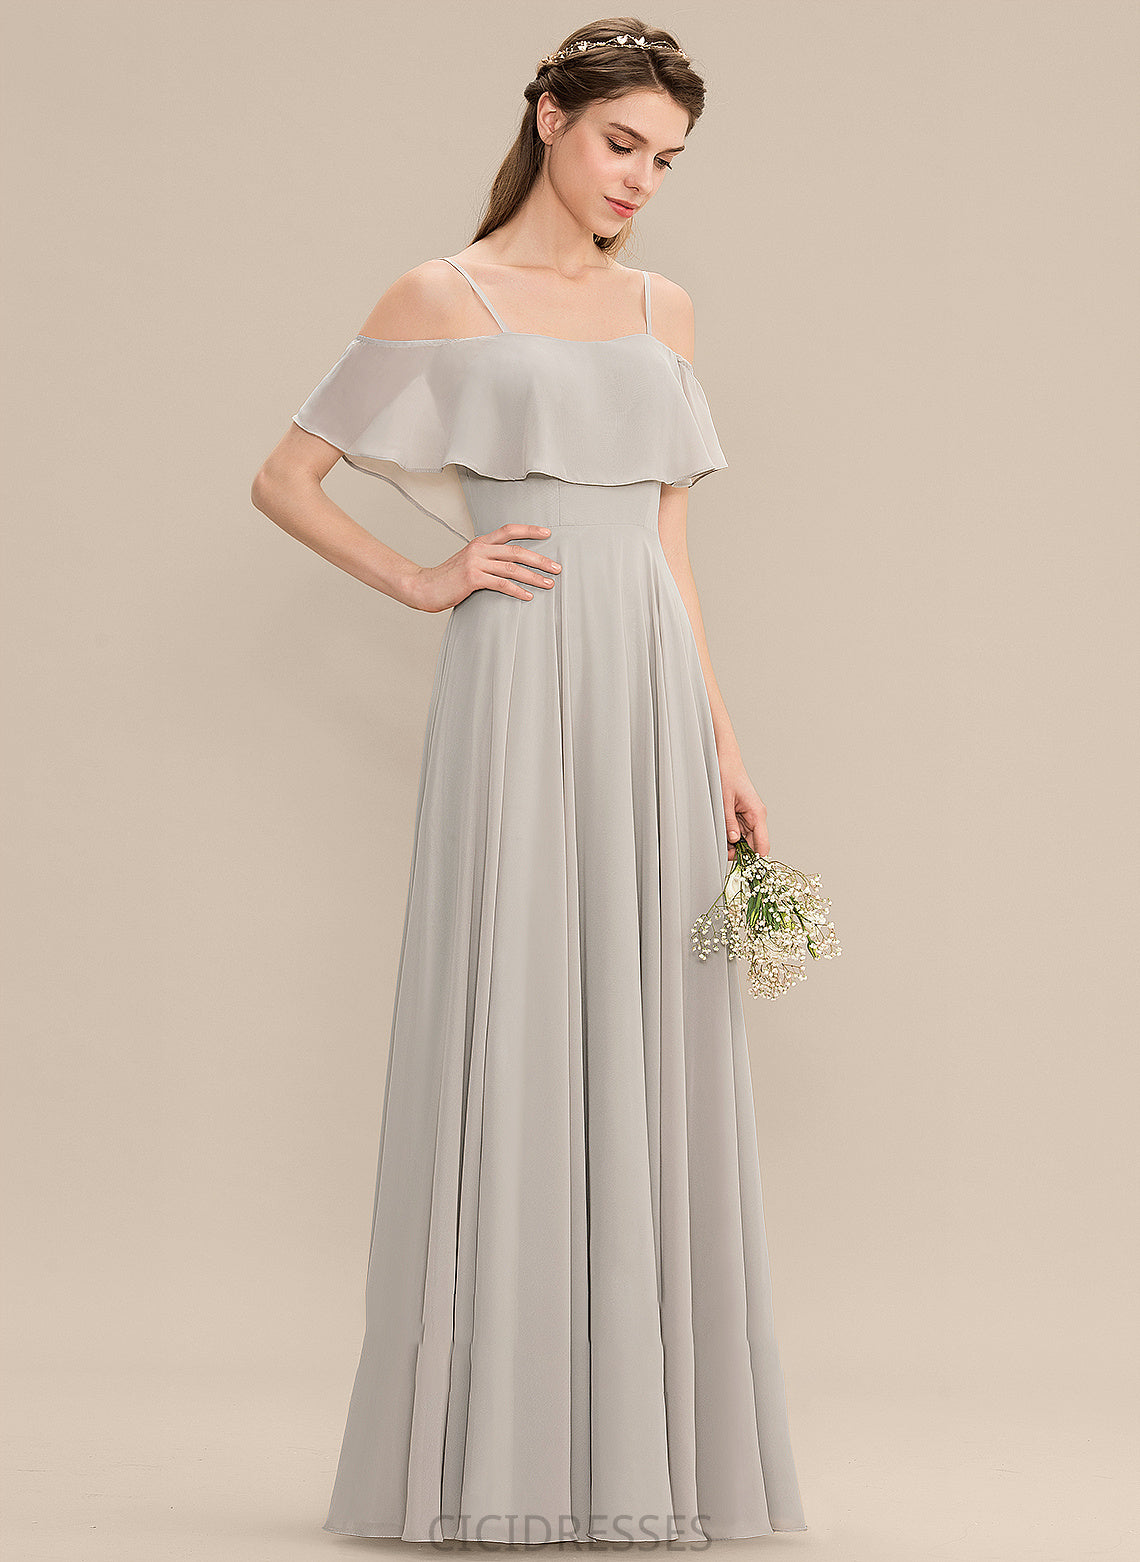 Silhouette A-Line Neckline Off-the-Shoulder Straps Floor-Length Length Fabric Abril Sleeveless A-Line/Princess Natural Waist Bridesmaid Dresses